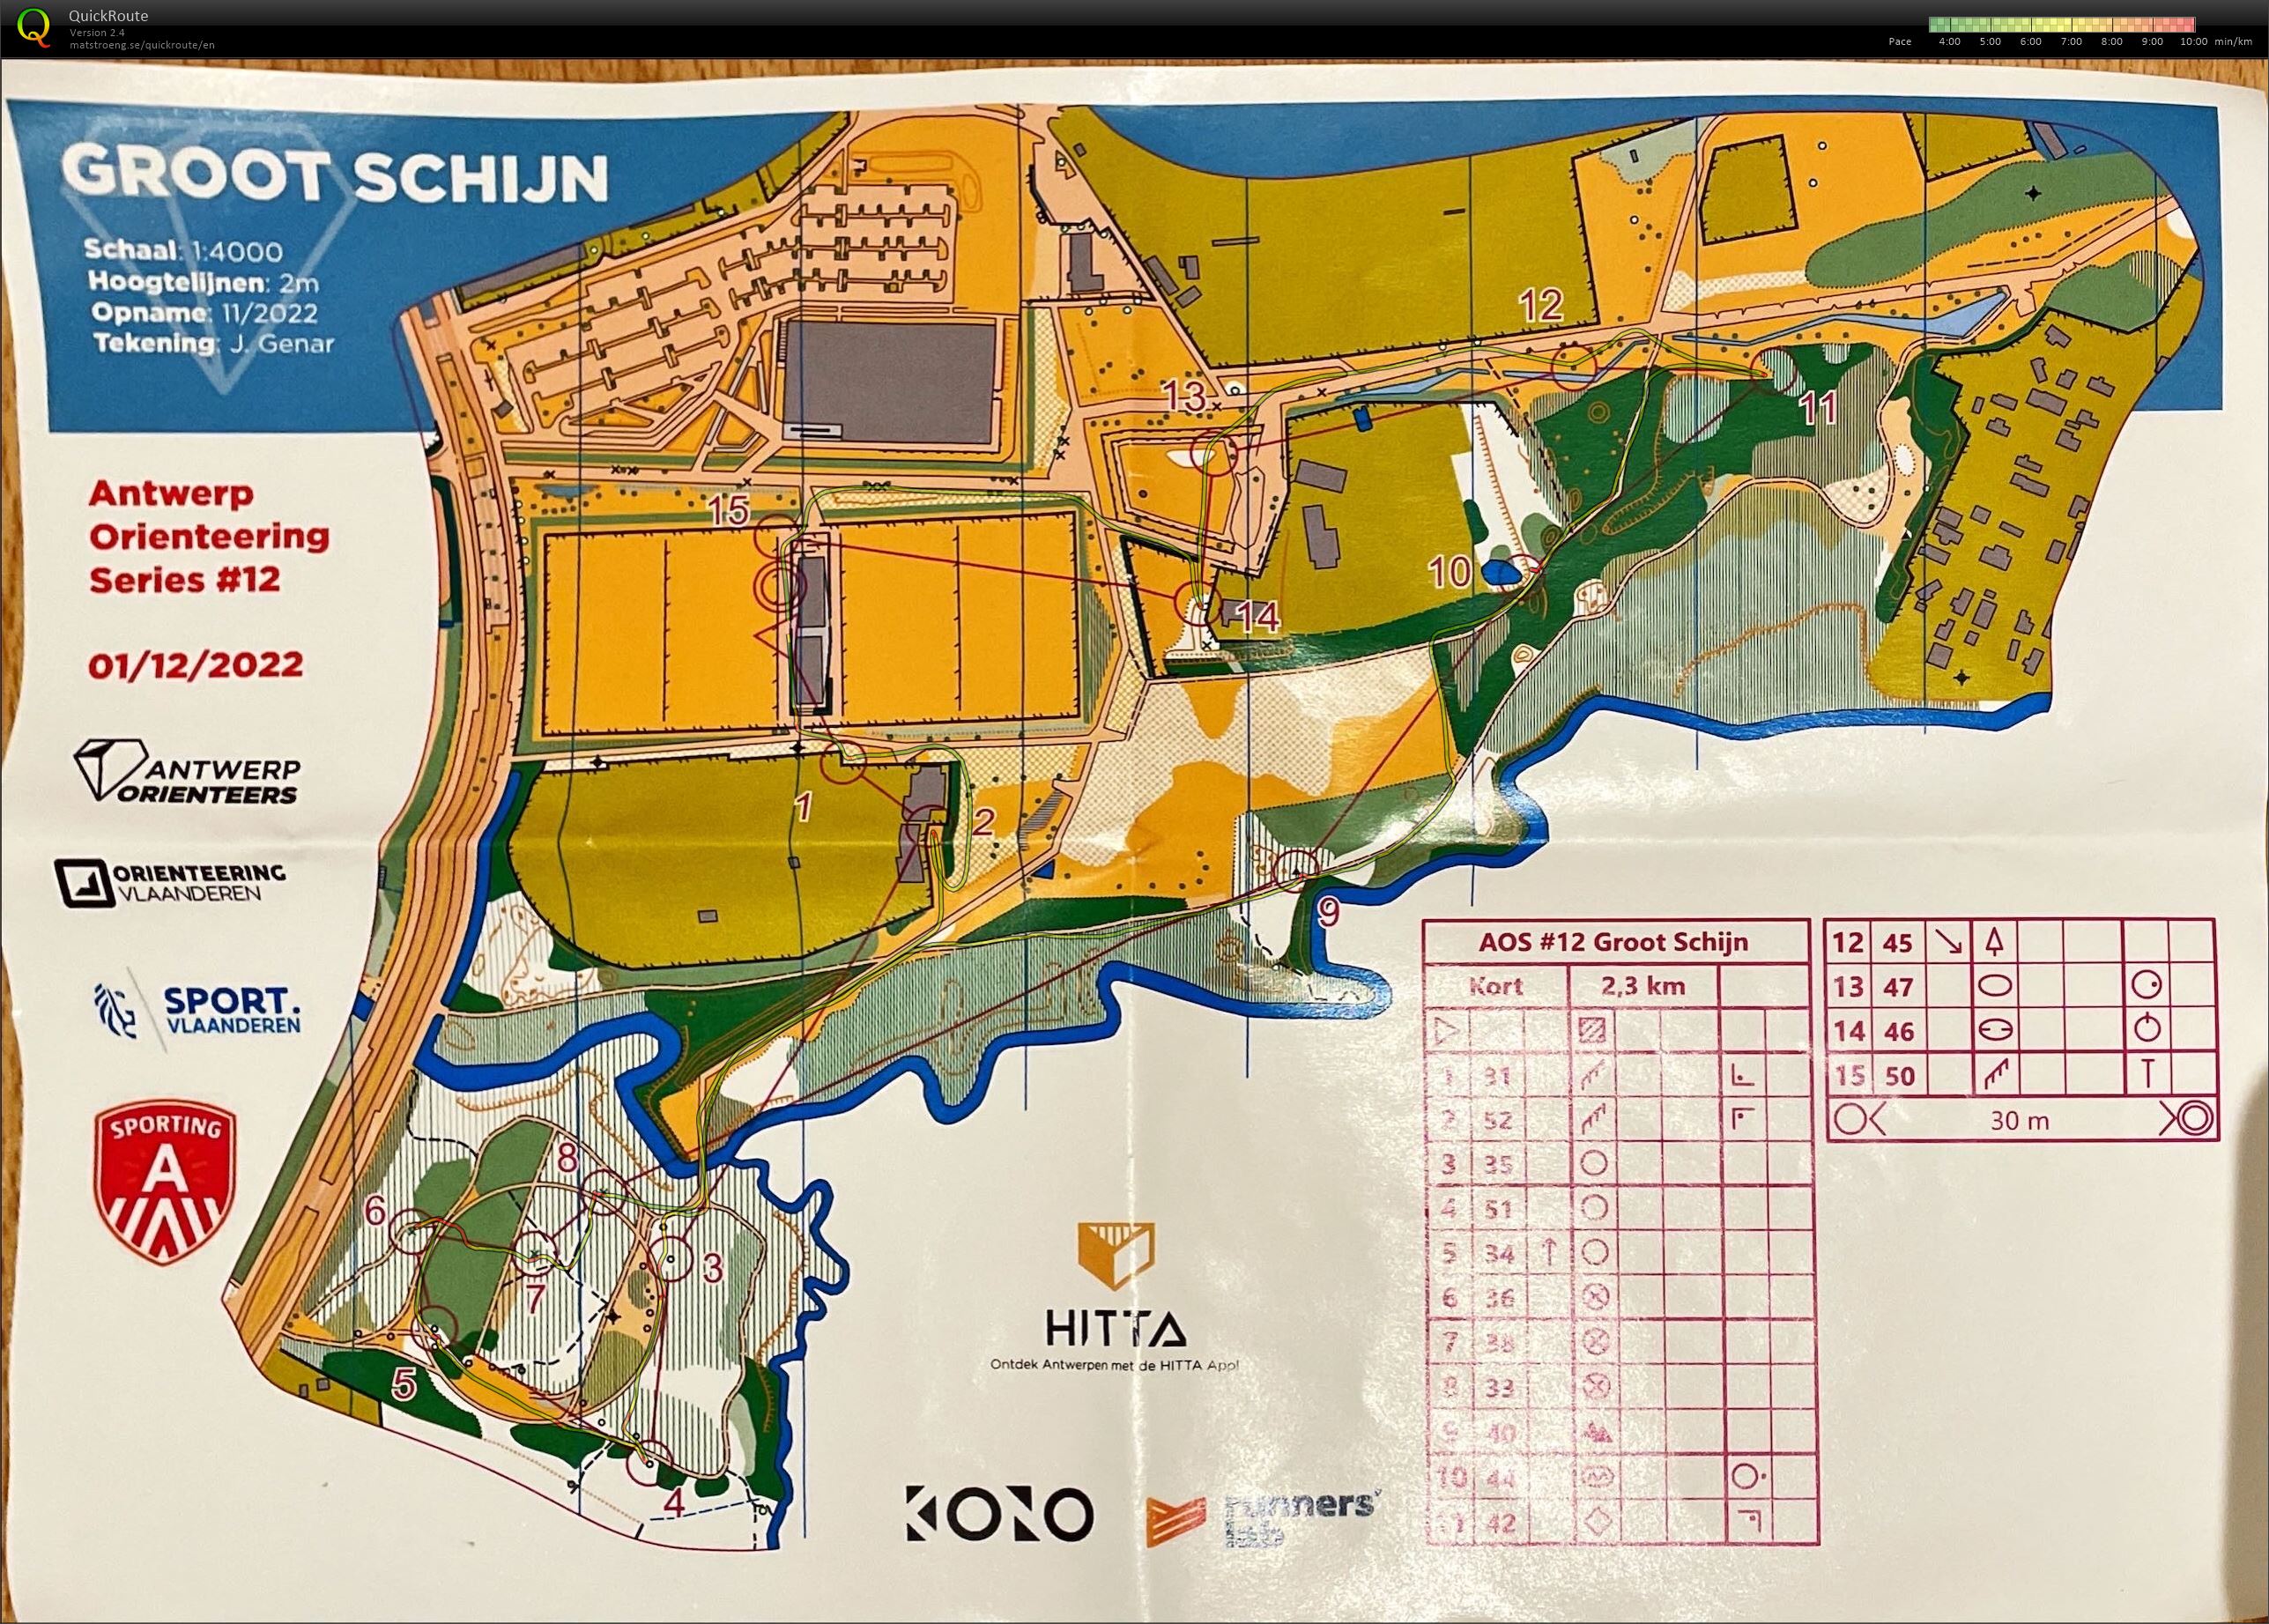 Antwerp Orienteering Series - Groot Schijn - Kort (01-12-2022)